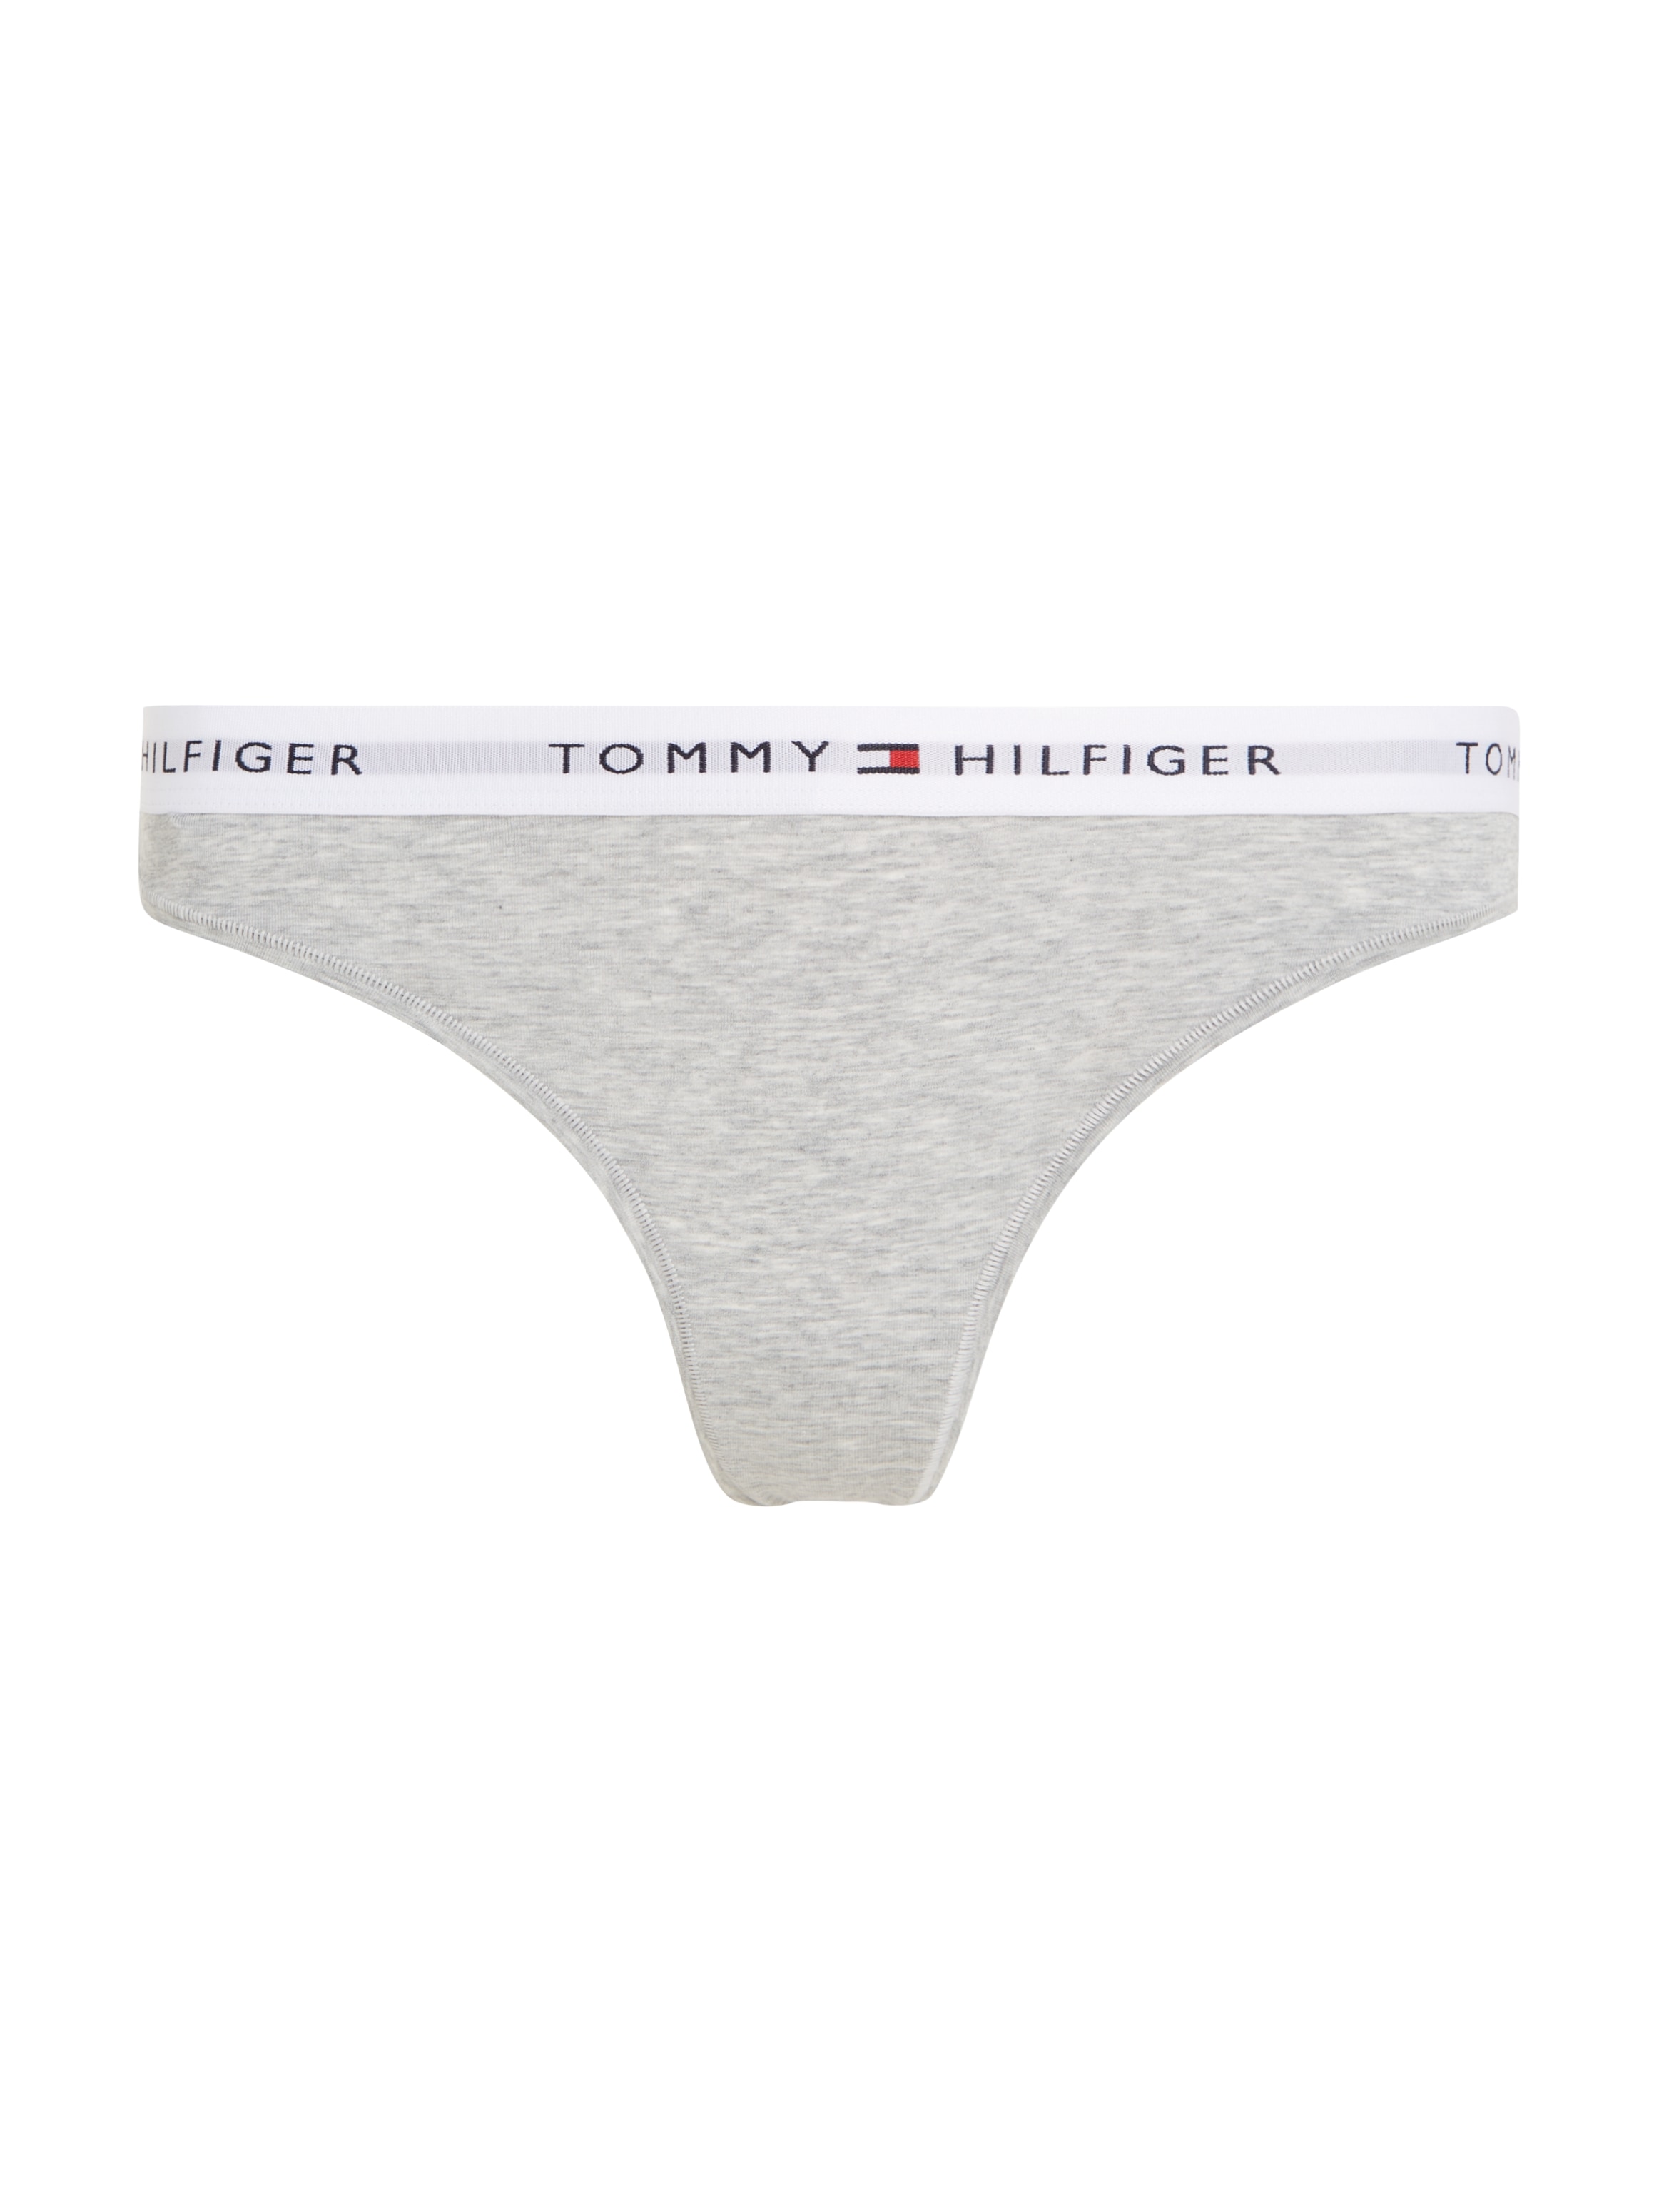 Tommy Hilfiger Underwear Logo OTTO auf Taillenbund mit T-String, bei dem kaufen